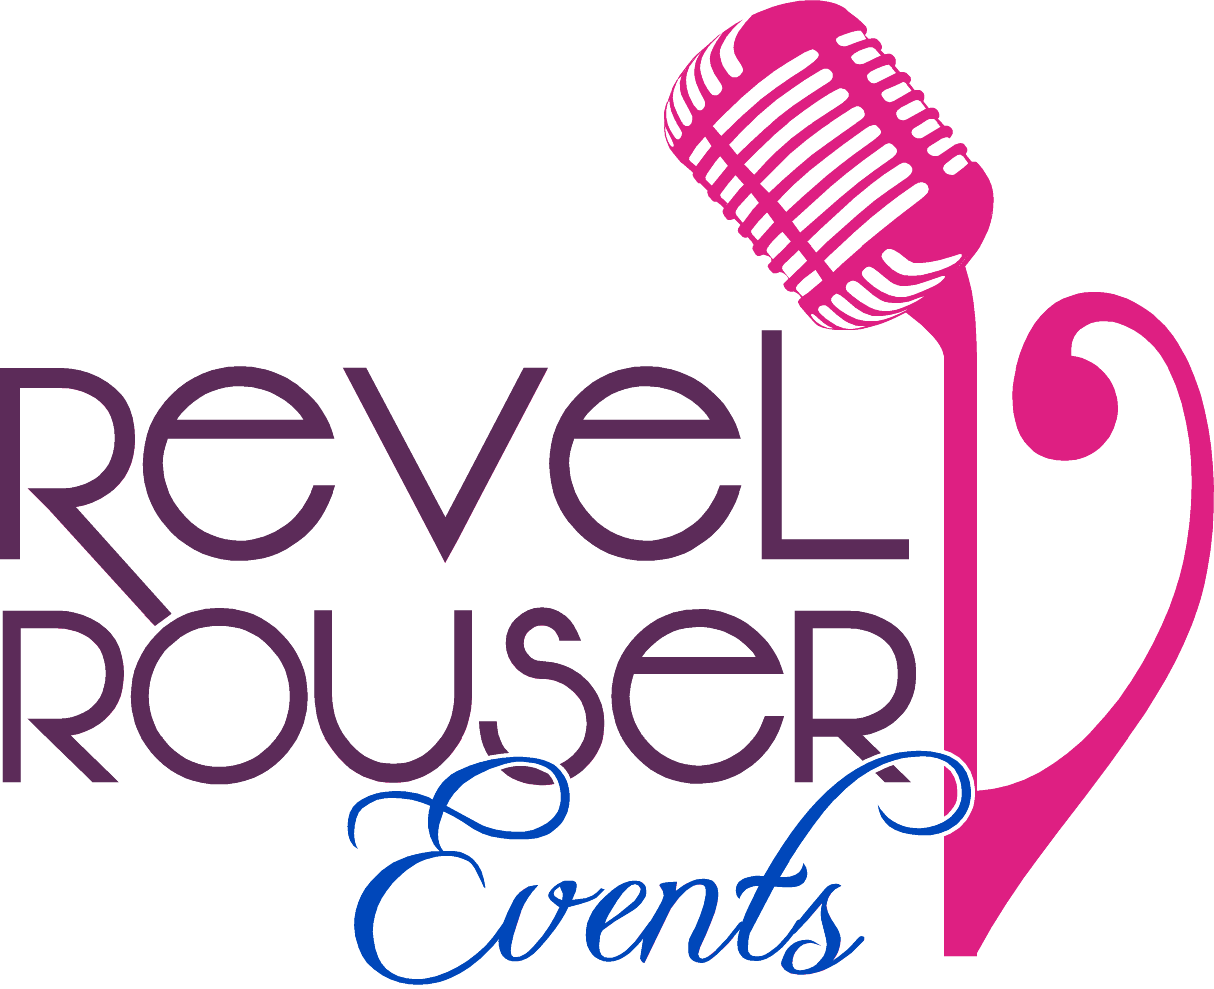 Revel Rouser Events